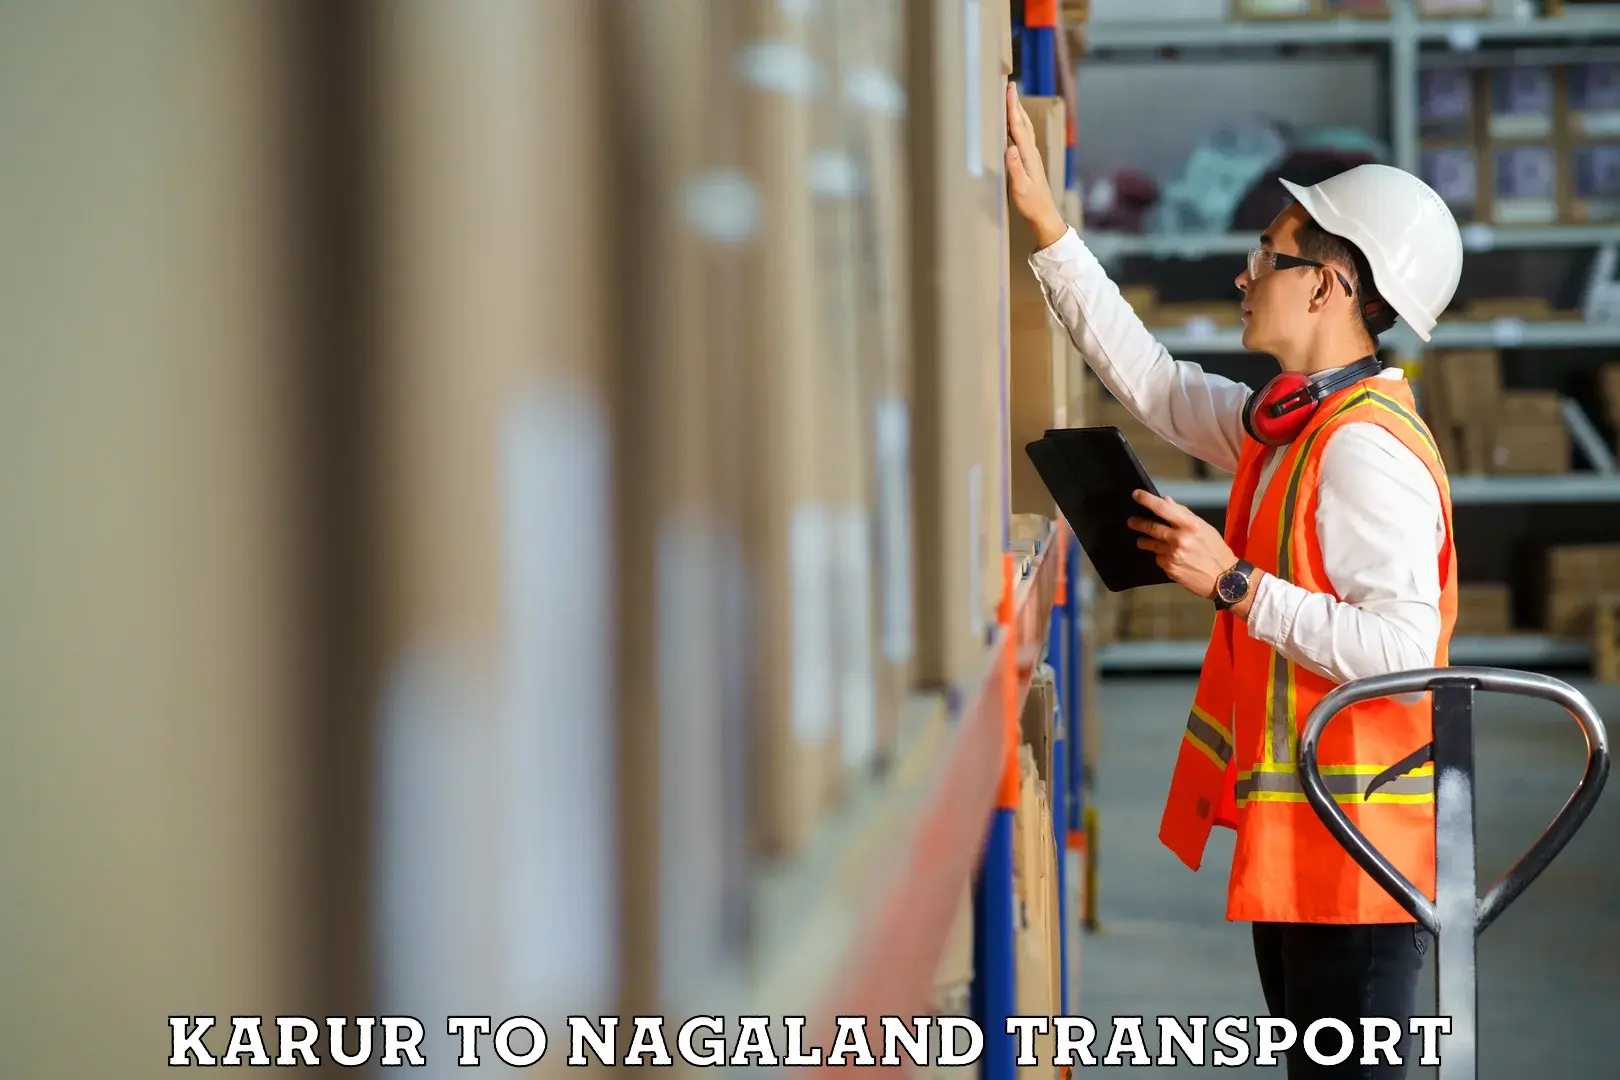 Bike transport service Karur to Nagaland